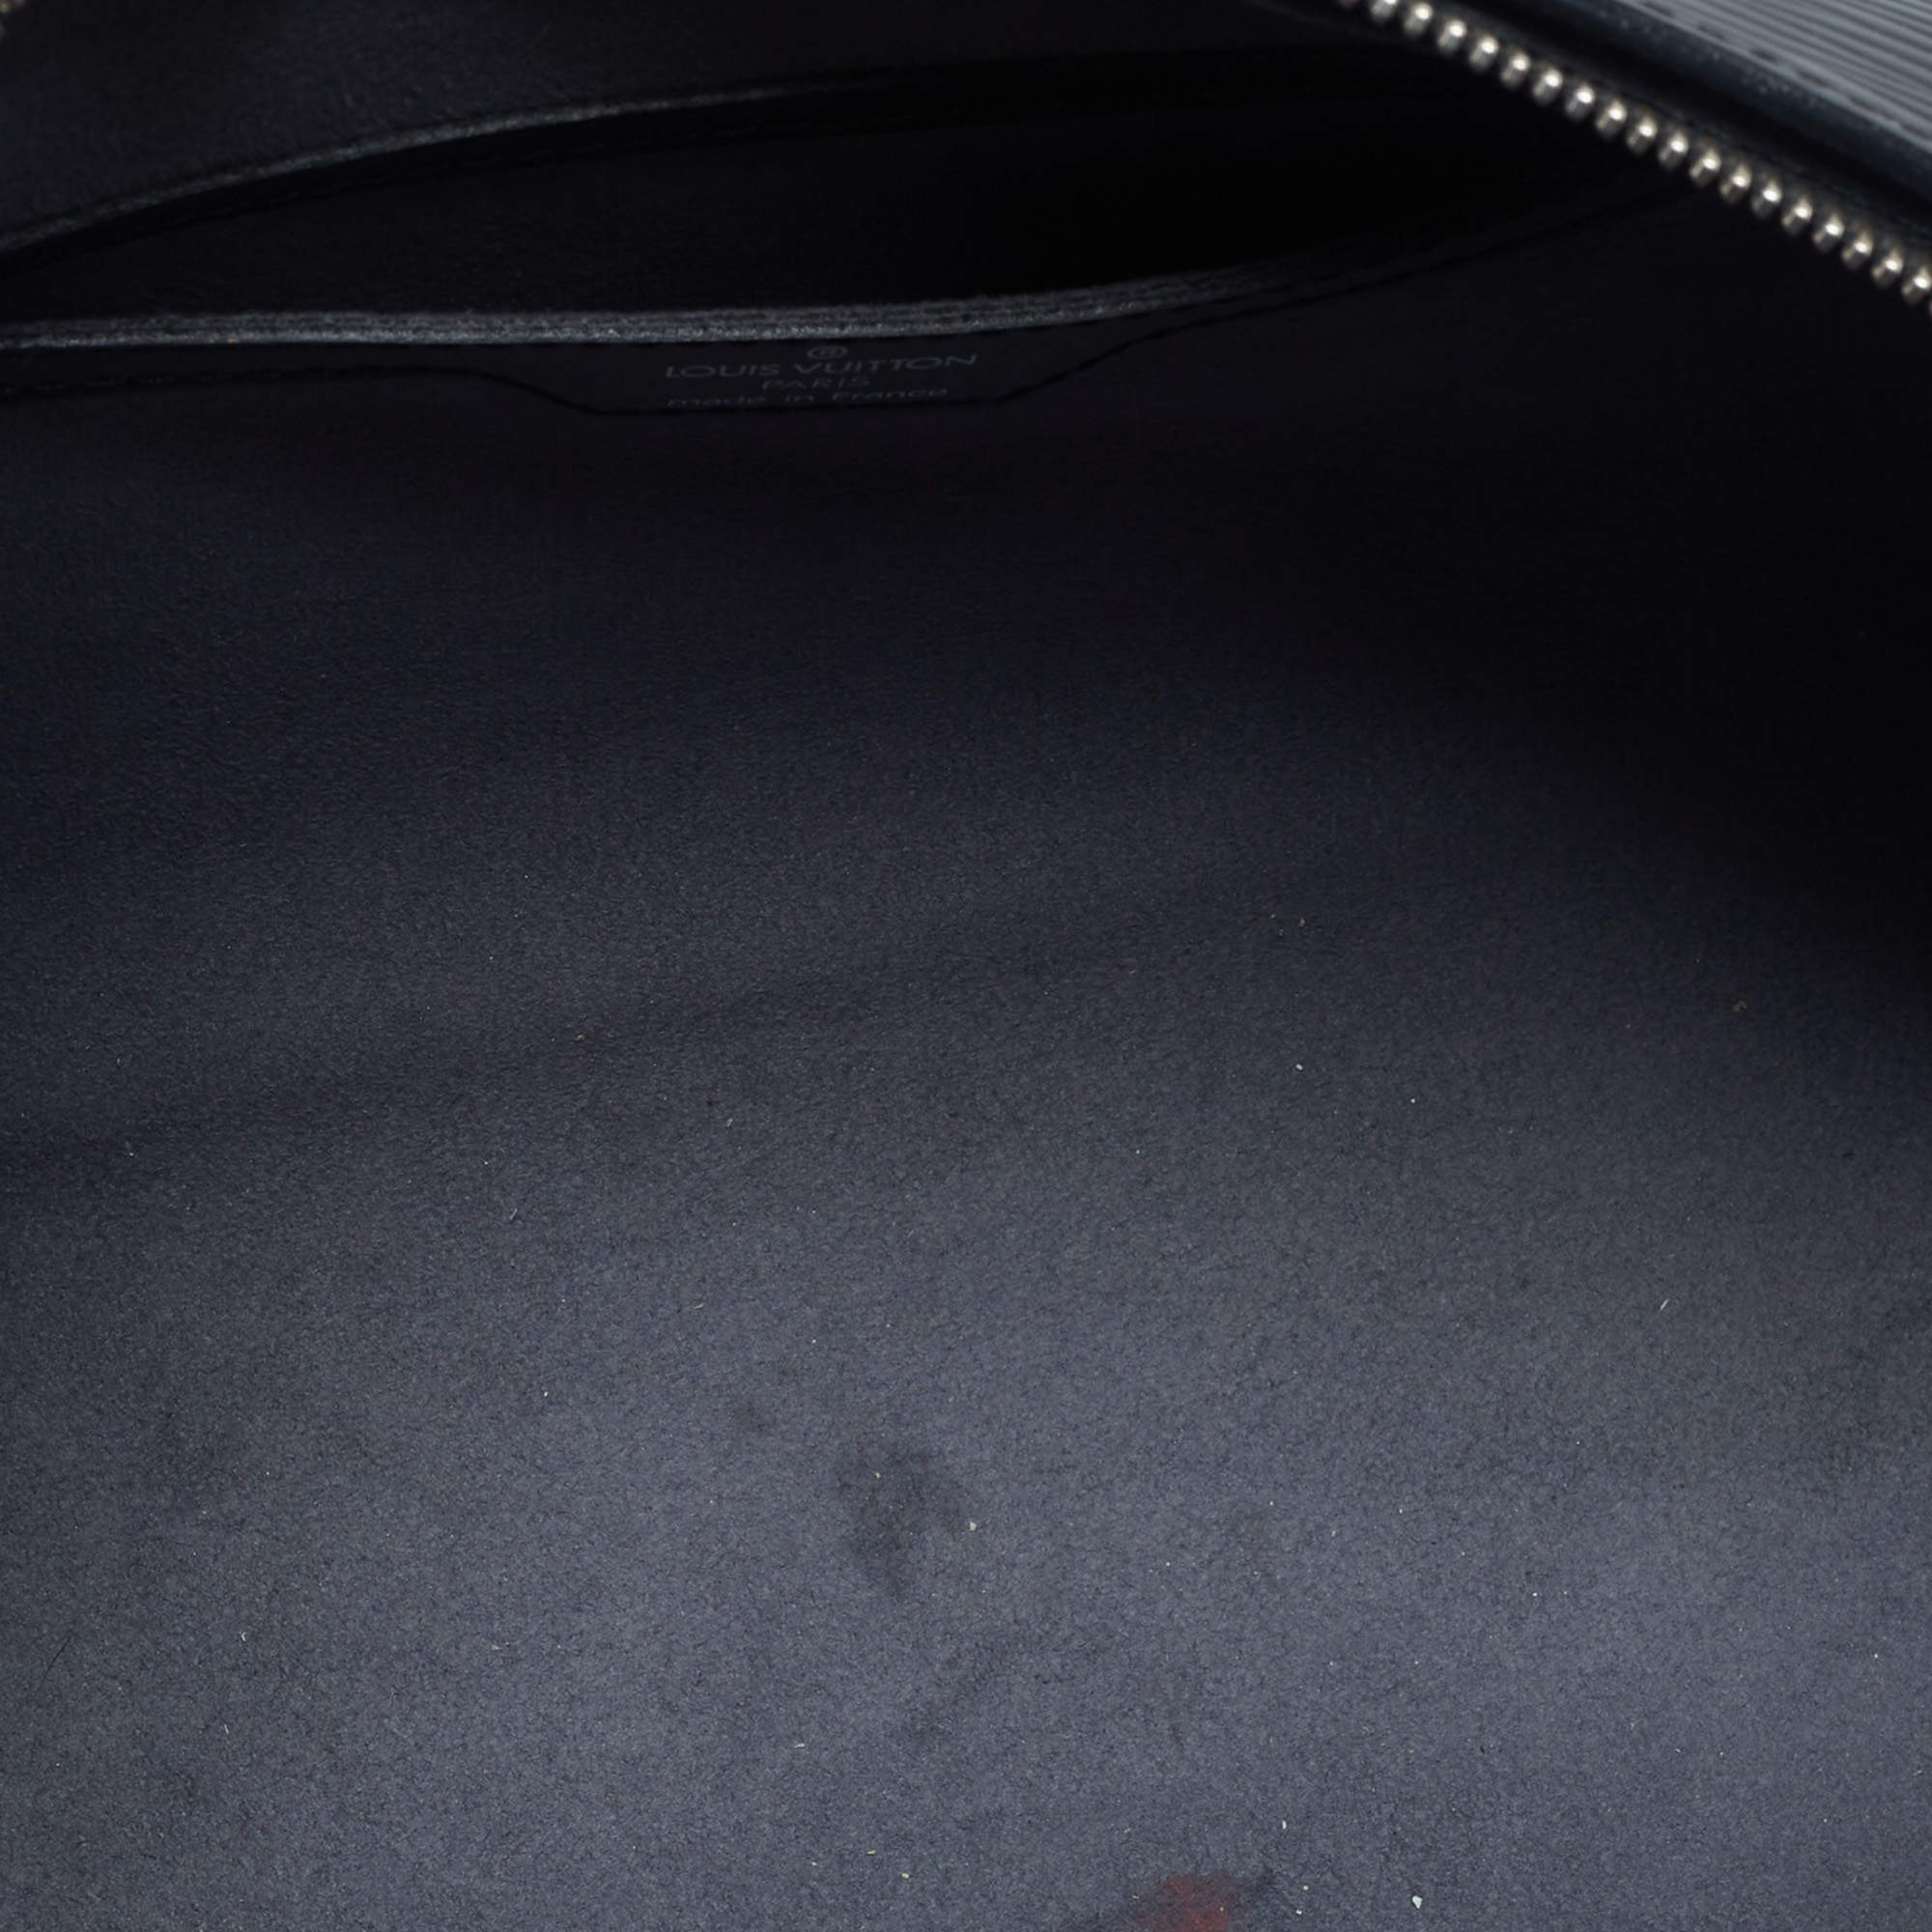 Louis Vuitton Papillon Trunk Bag Epi Leather Black 2388843